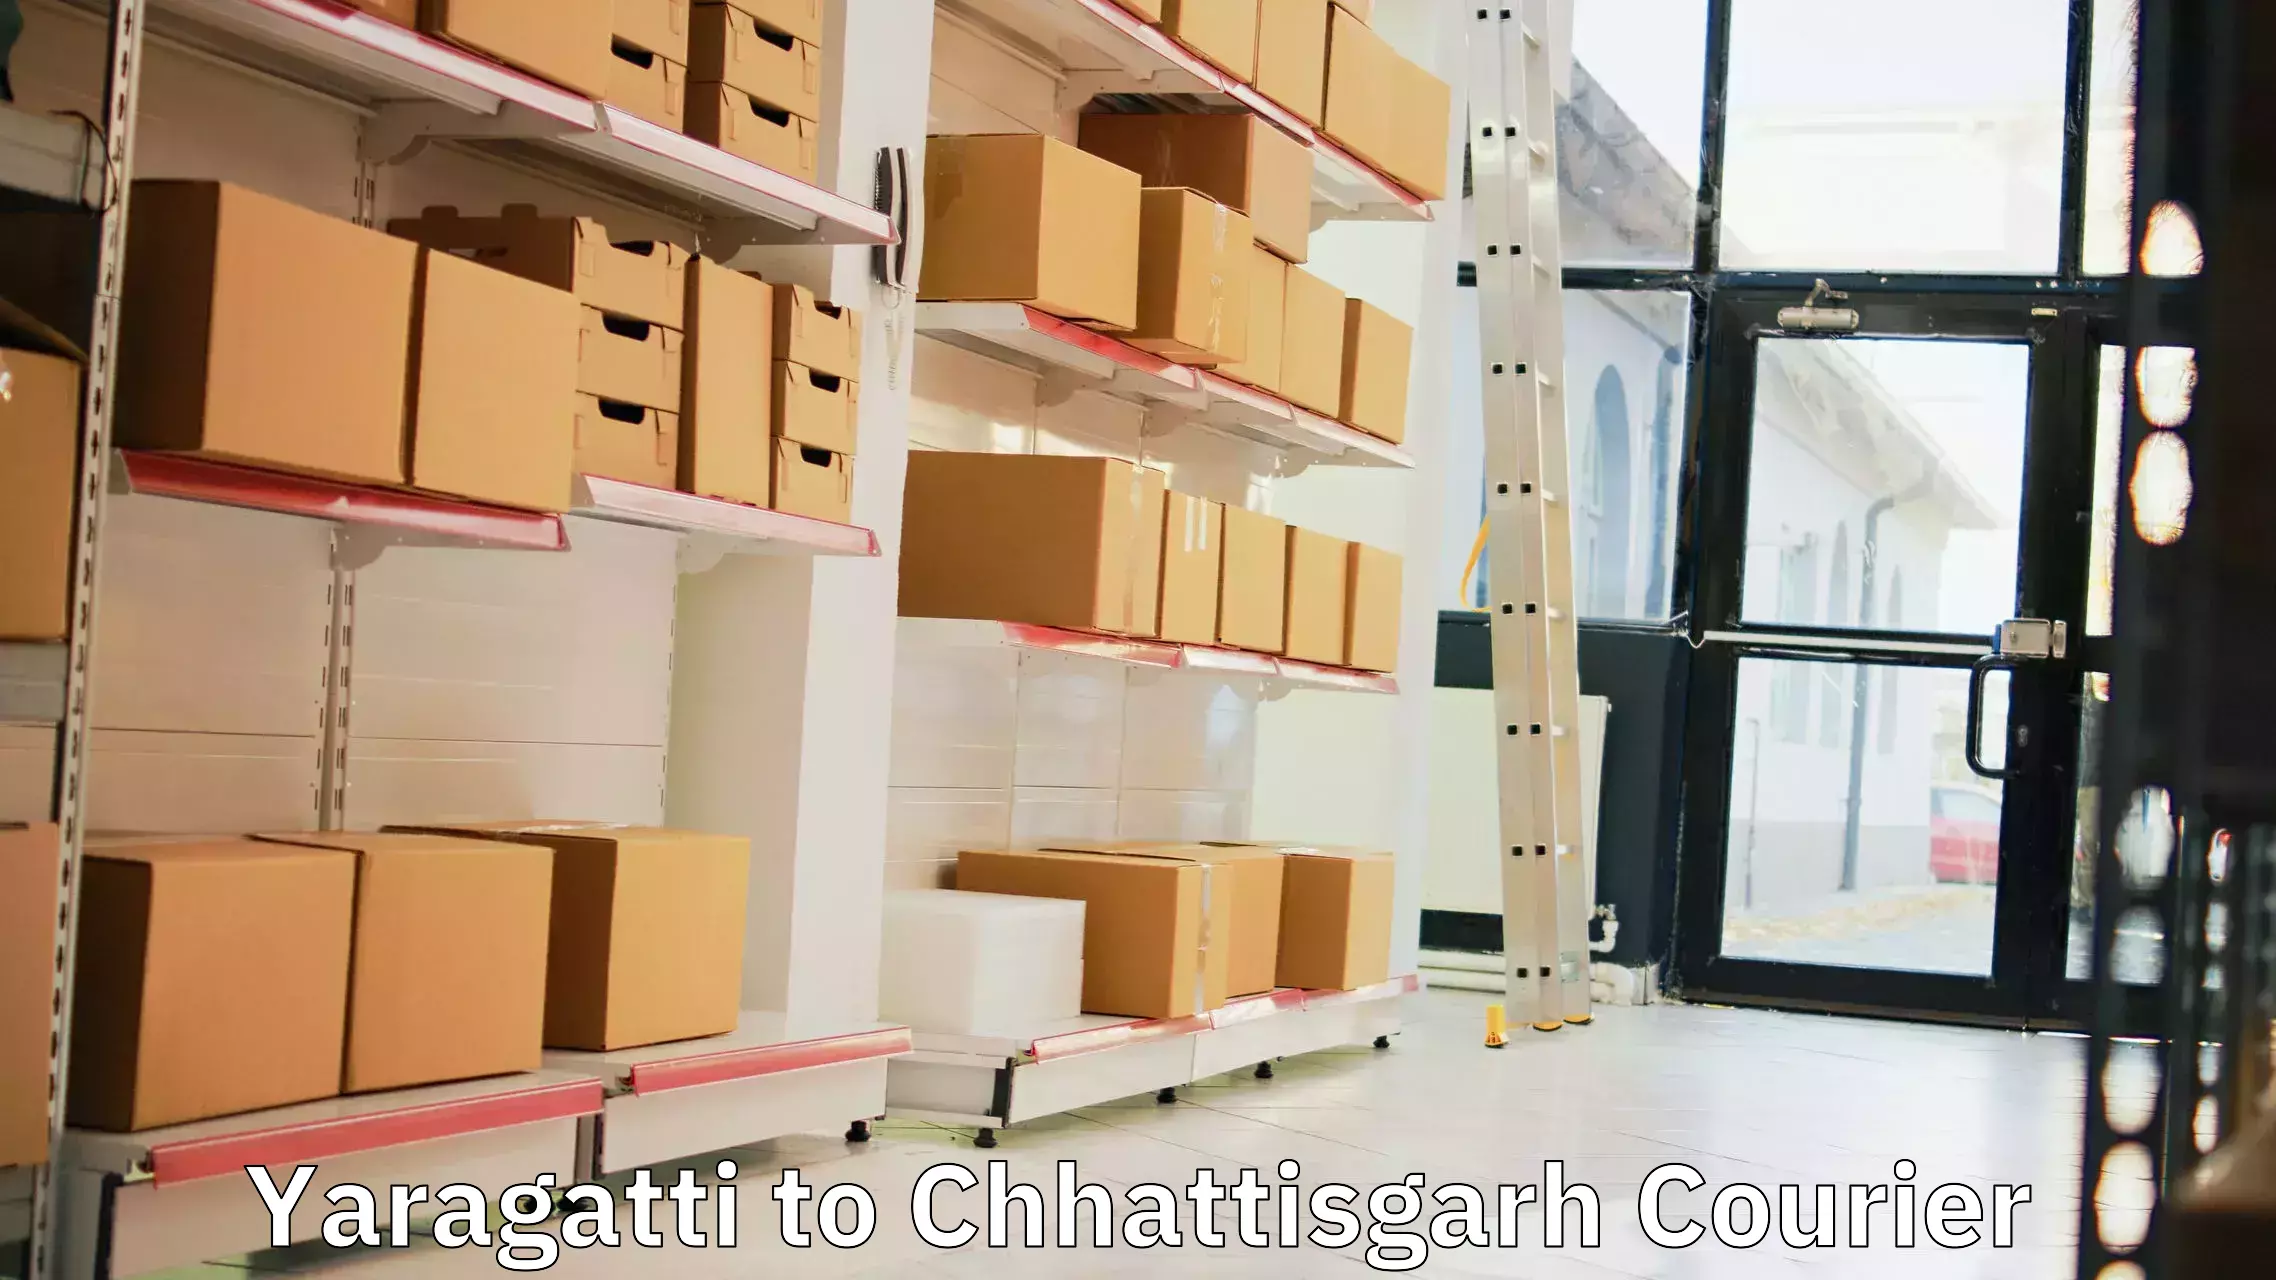 Next-generation courier services Yaragatti to Chhattisgarh